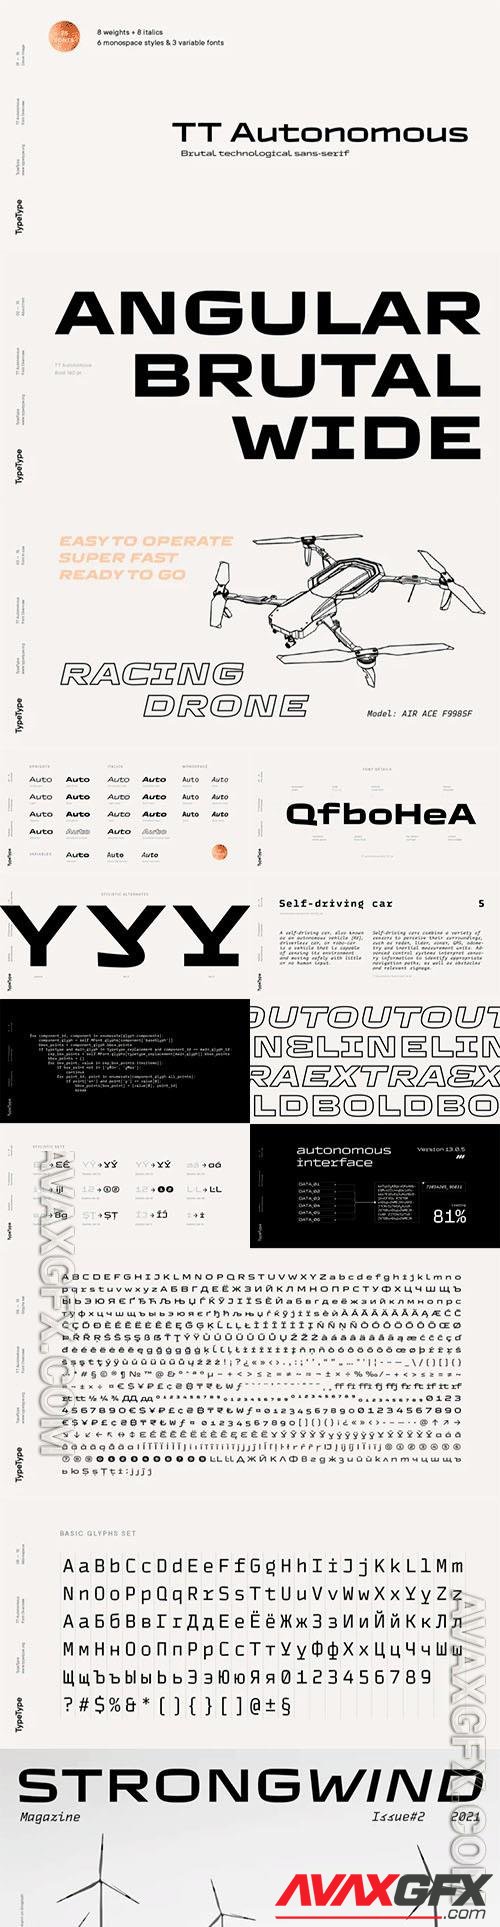 TT Autonomous font family